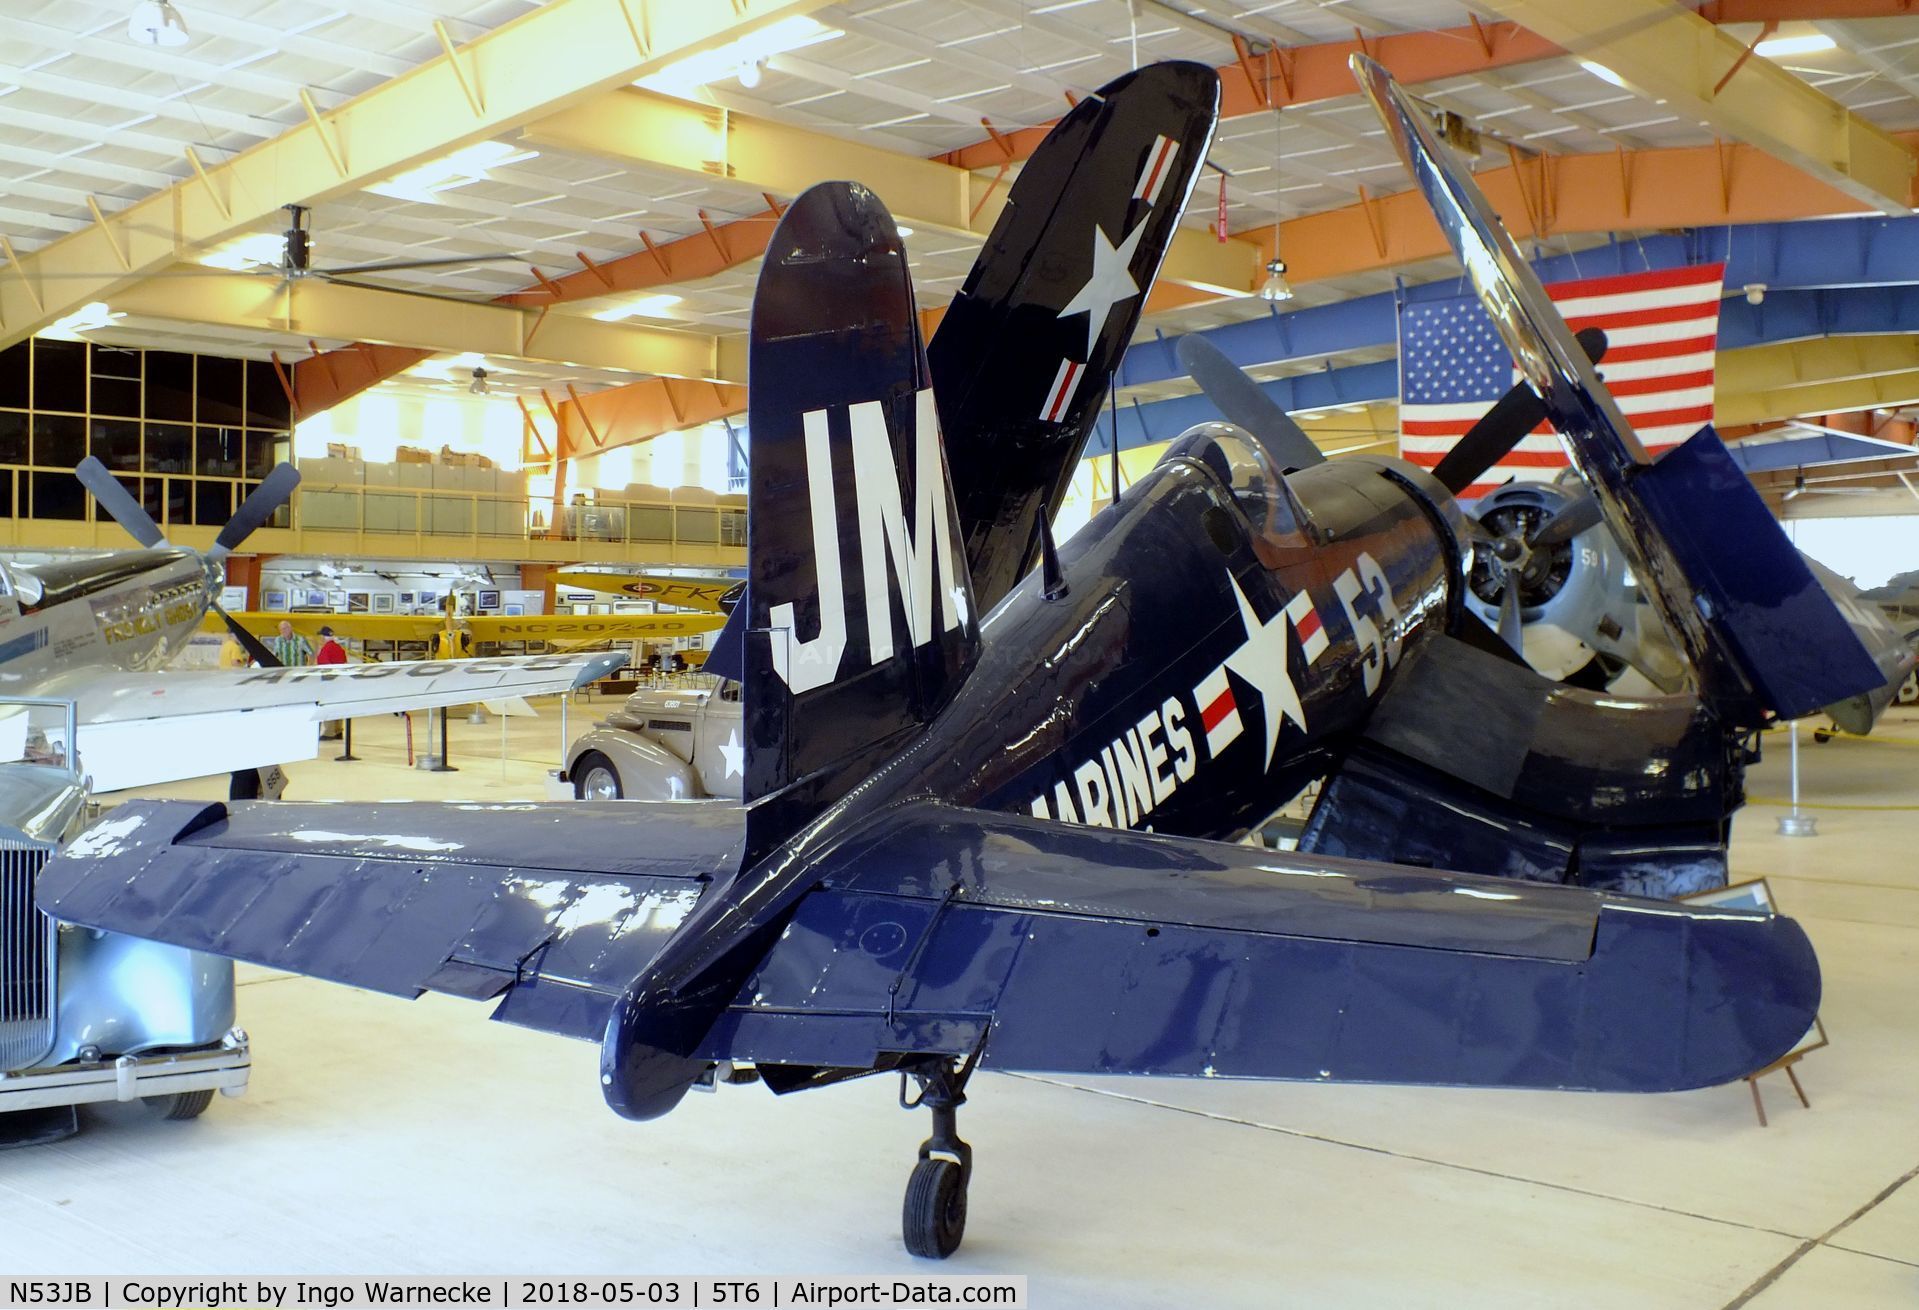 N53JB, 1942 Vought F4U-4 Corsair C/N 8423, Vought F4U-4 Corsair at the War Eagles Air Museum, Santa Teresa NM